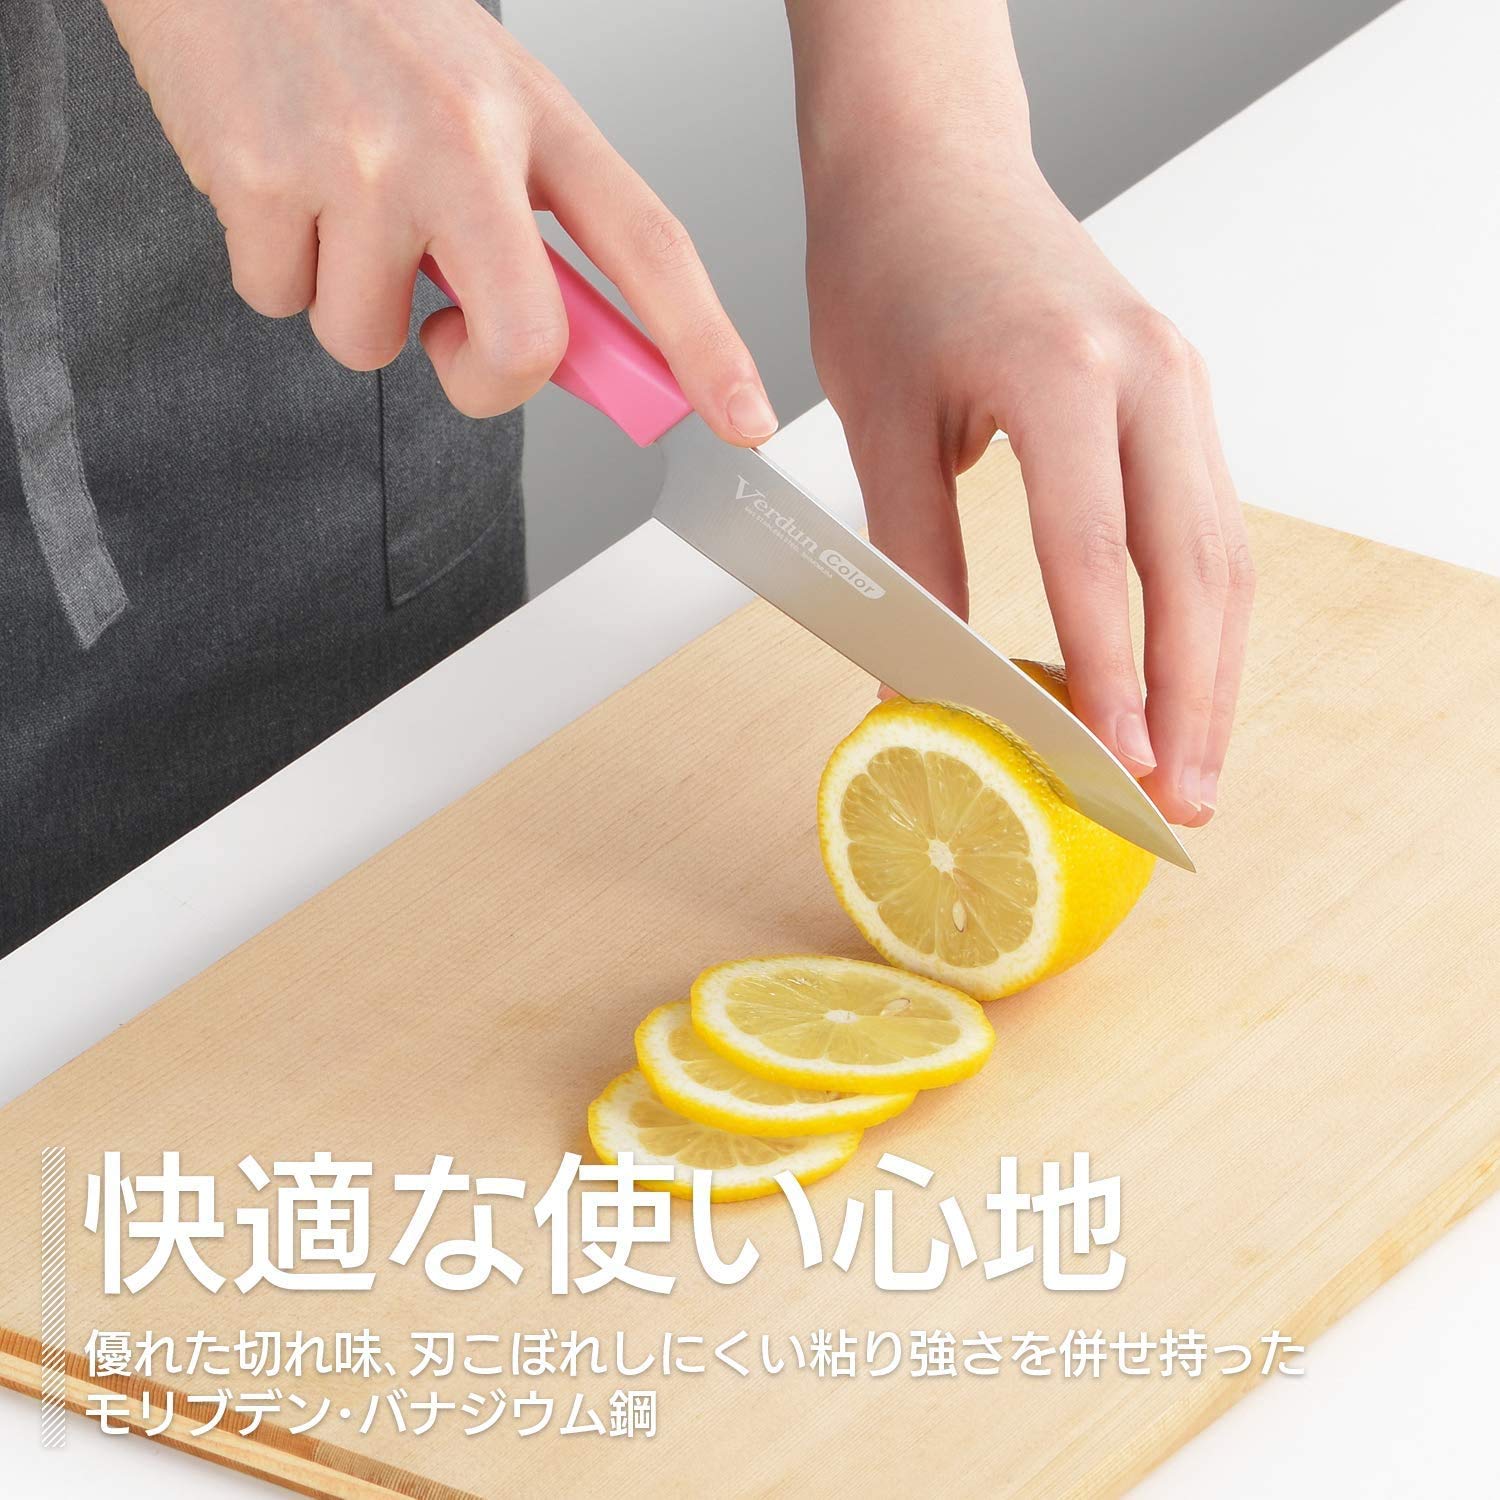 Shimomura Kougyou VCN-03O 130mm Orange Molybdenum Vanadium Steel Knife Dishwasher Safe